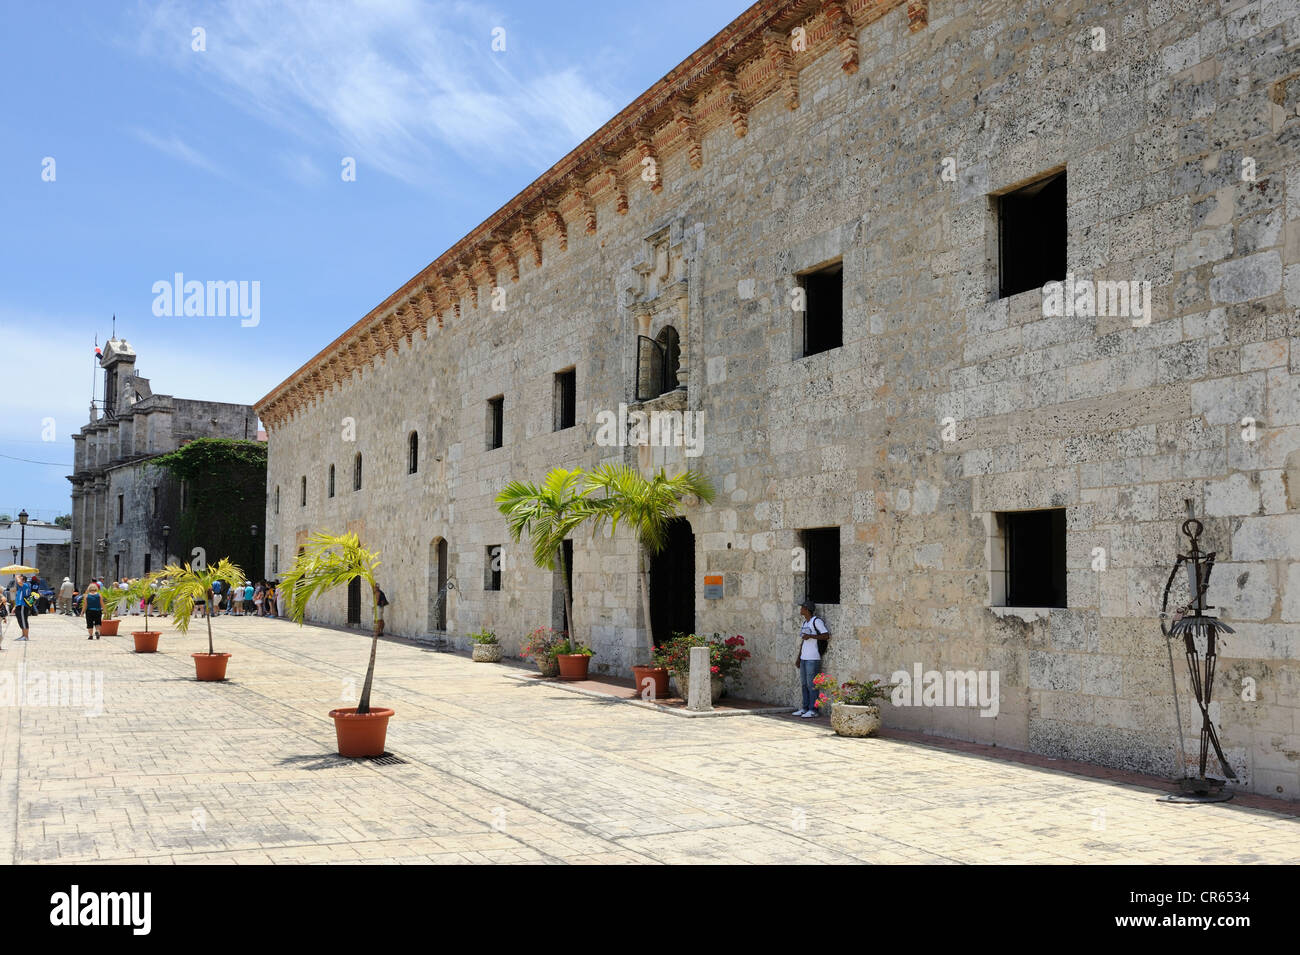 Museo de las Casas Reales, Sito Patrimonio Mondiale dell'UNESCO, Santo Domingo, Repubblica Dominicana, dei Caraibi Foto Stock